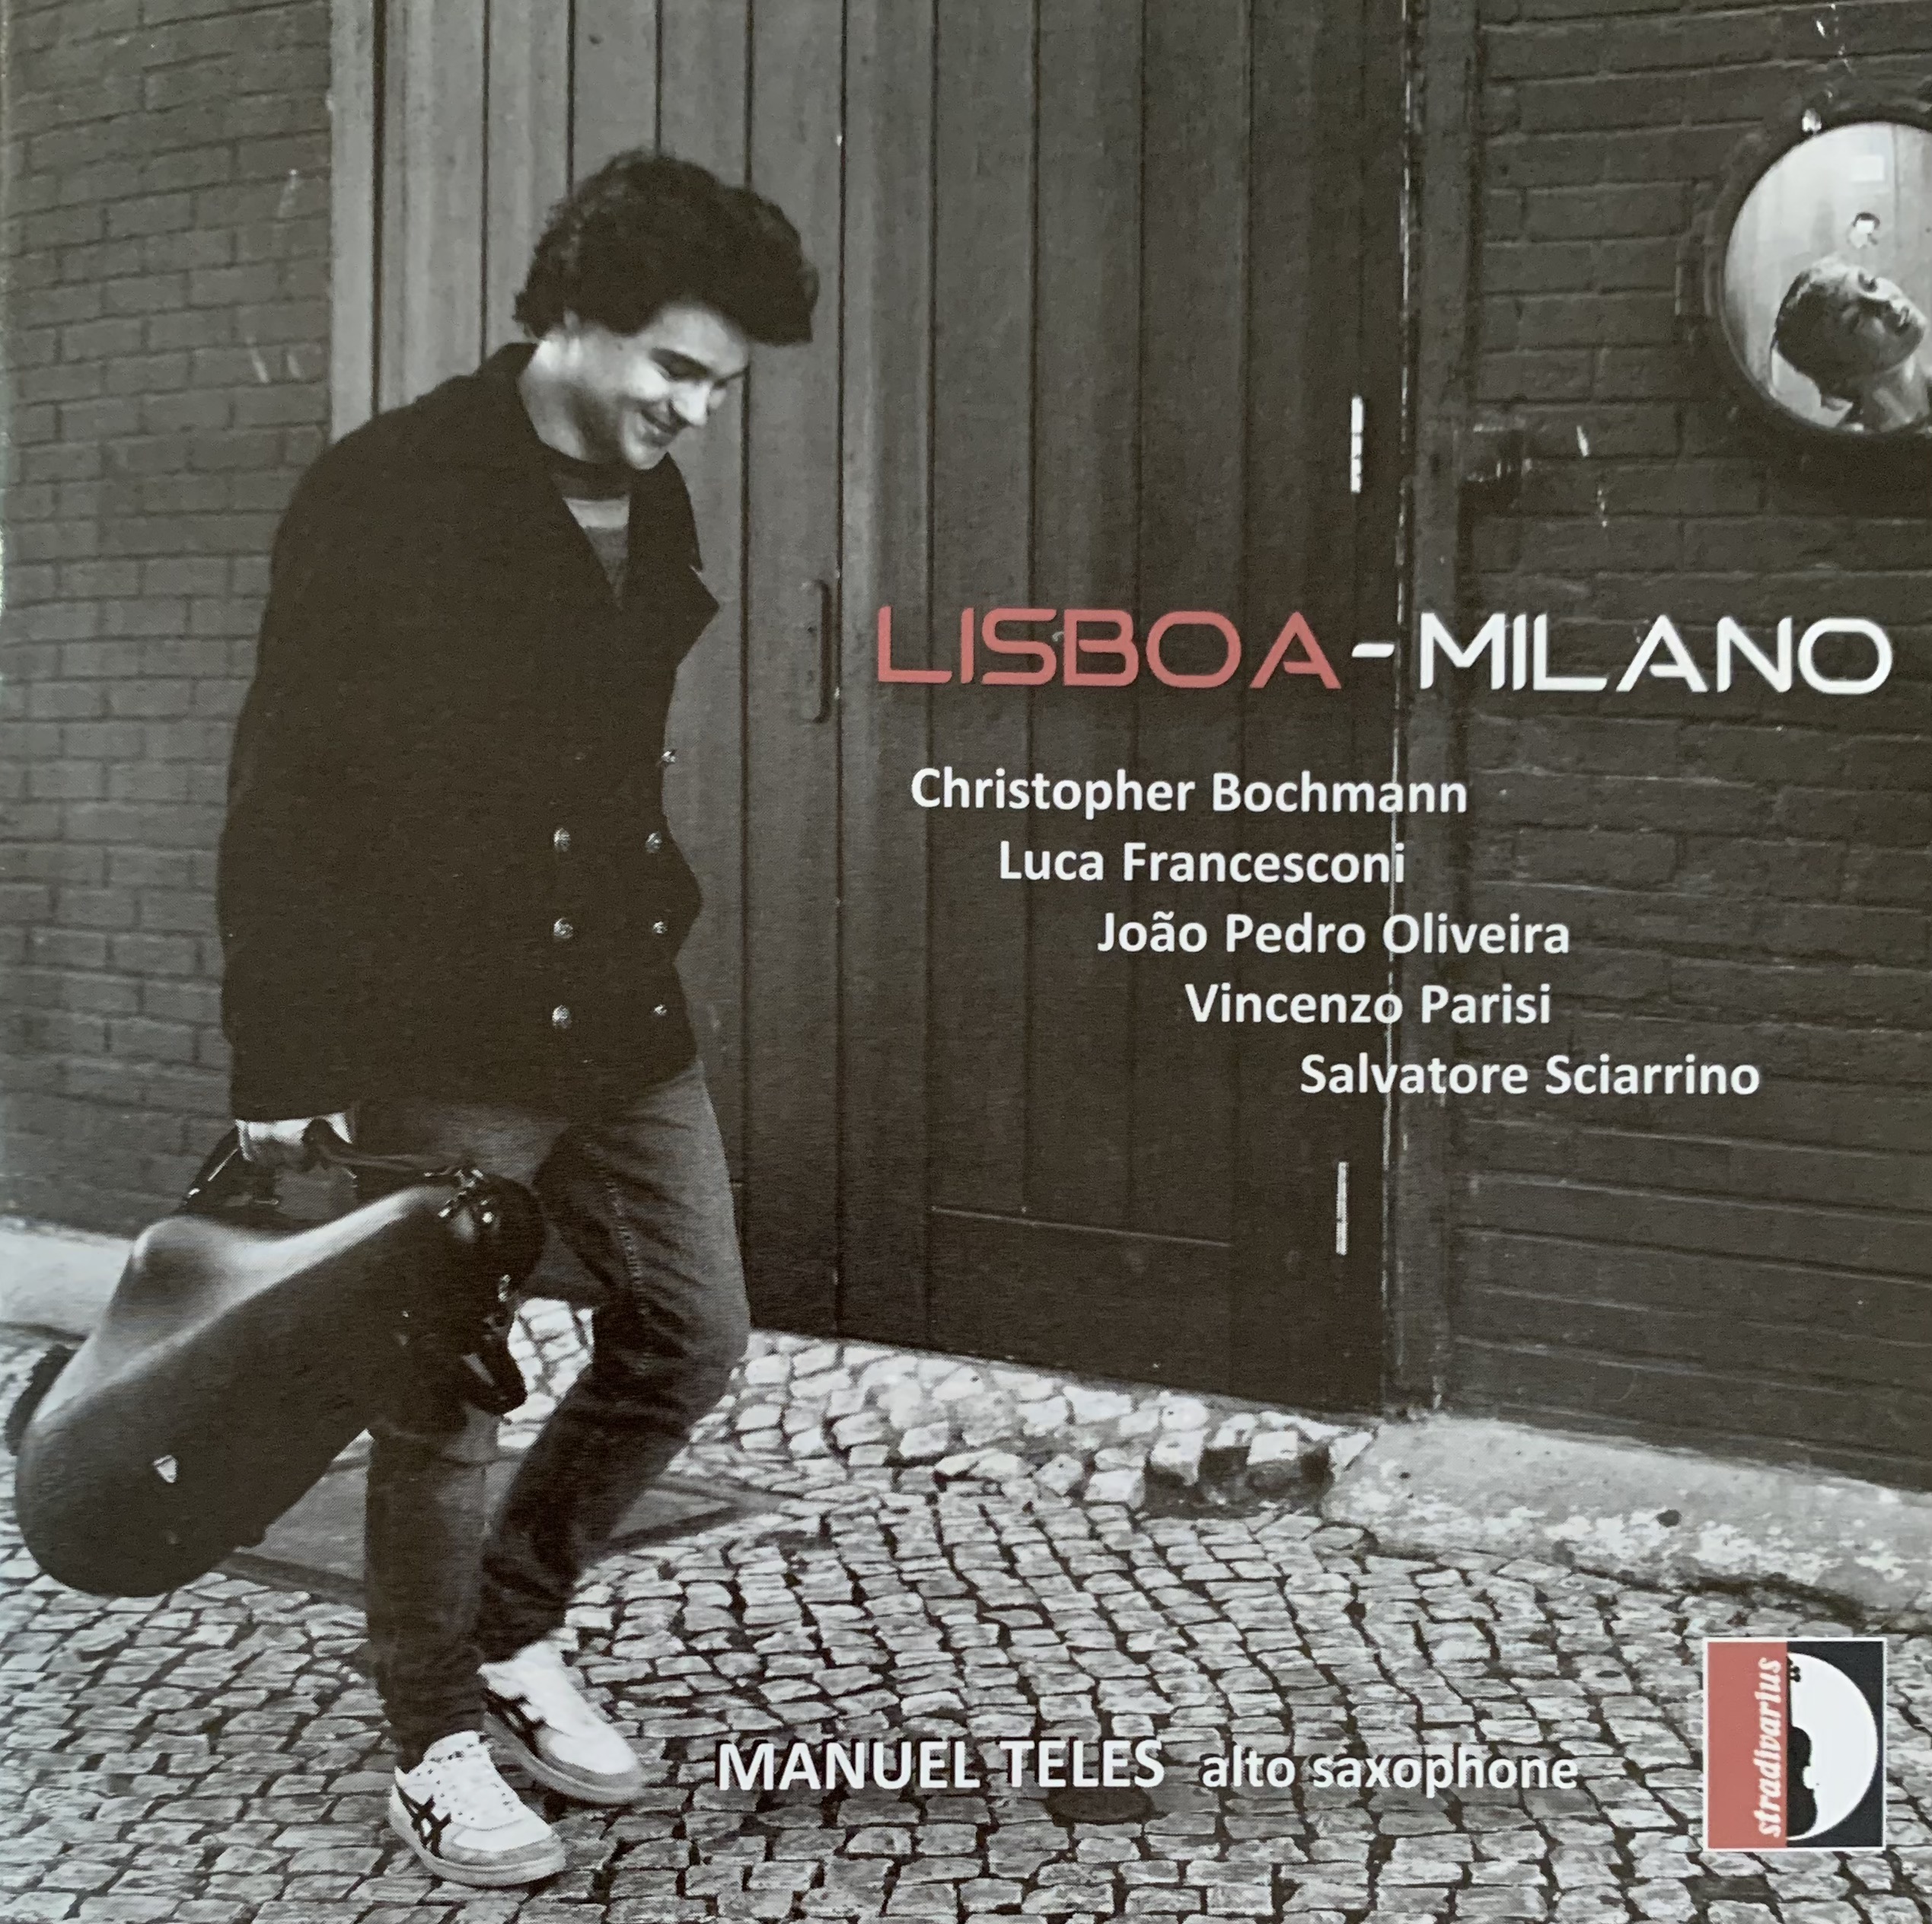 Lisboa-Milano - Manuel Teles (Saxophone)